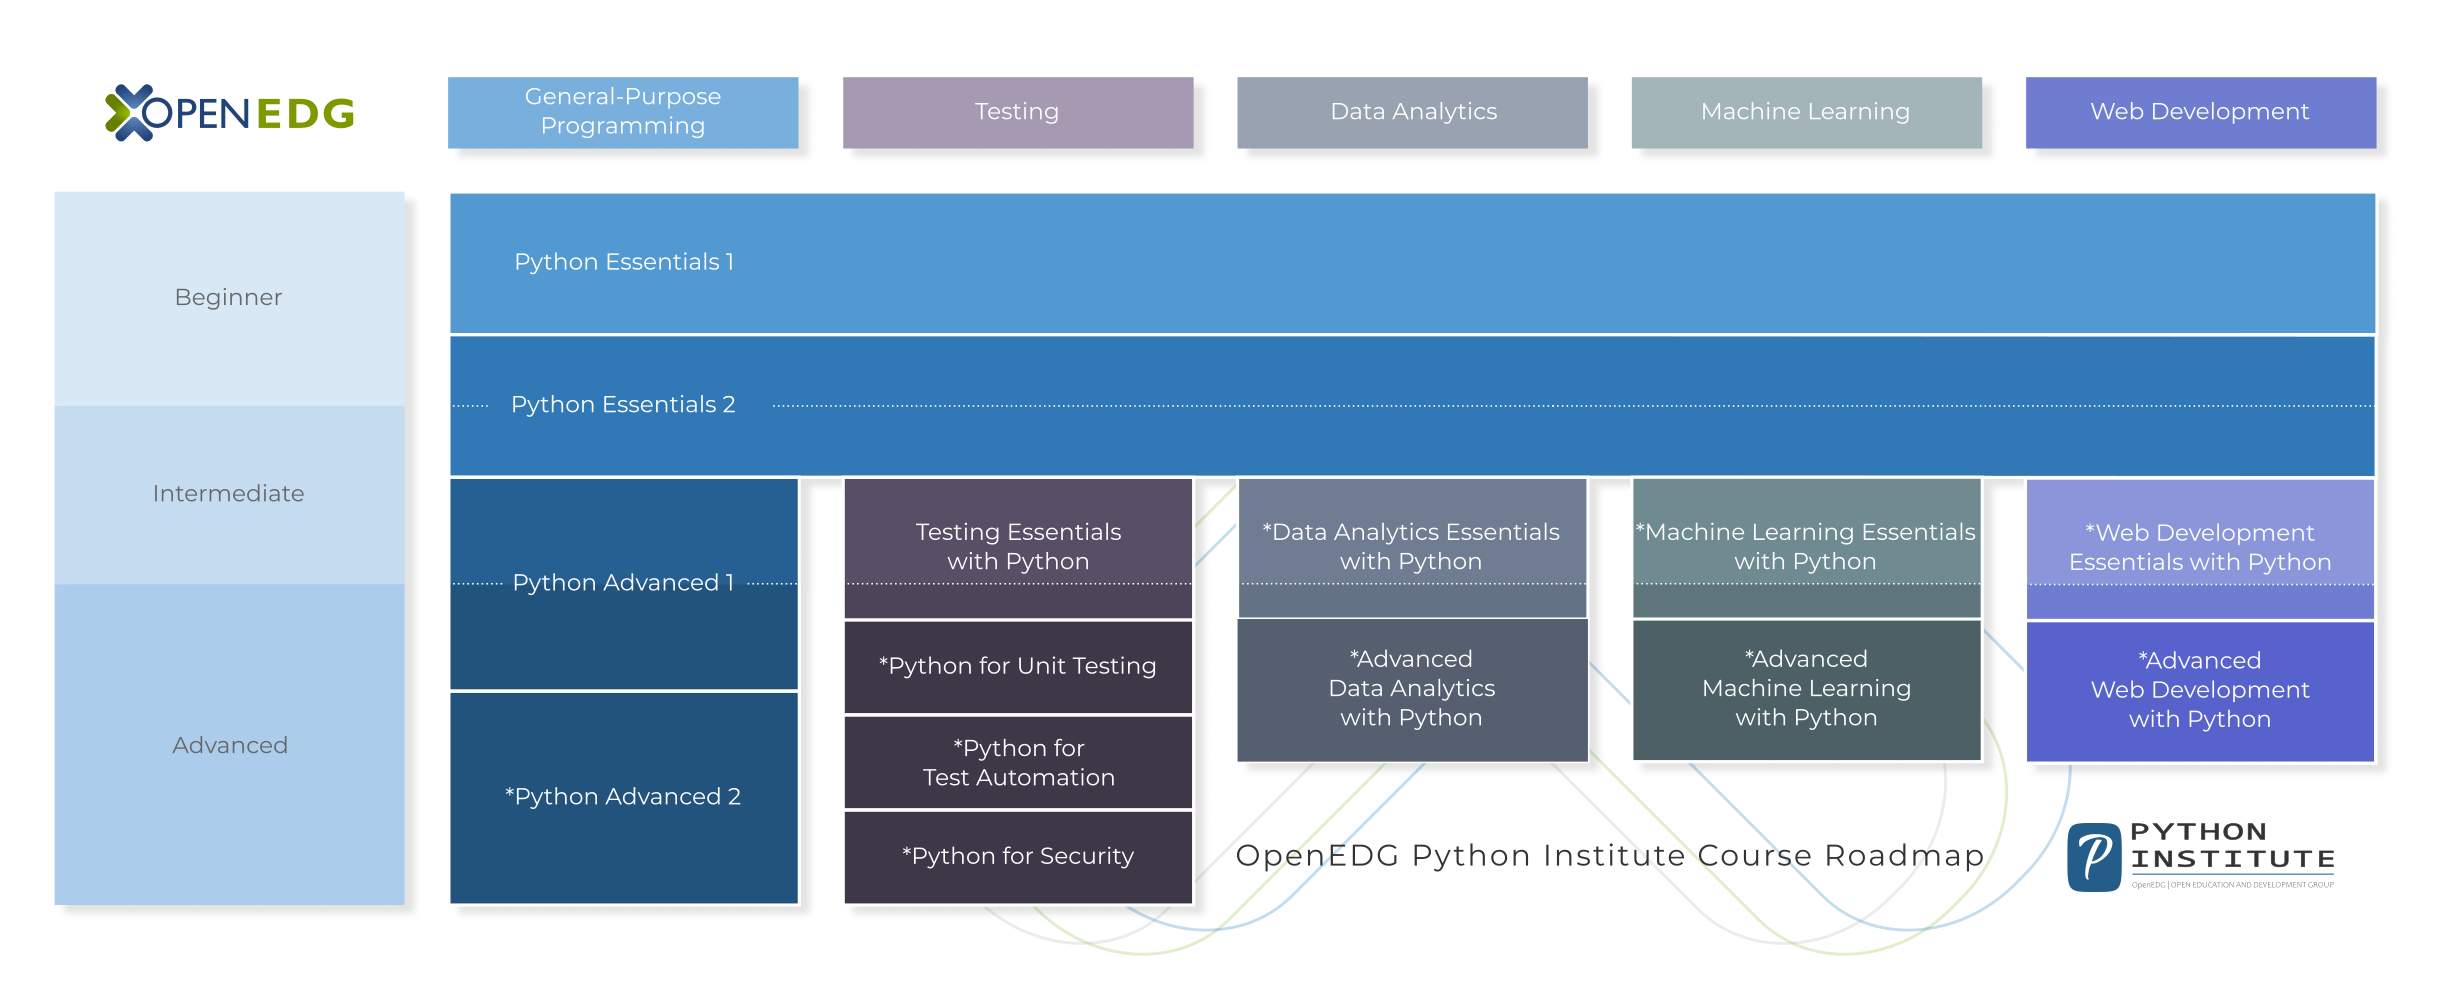 OpenEDG Python Institute Course Roadmap